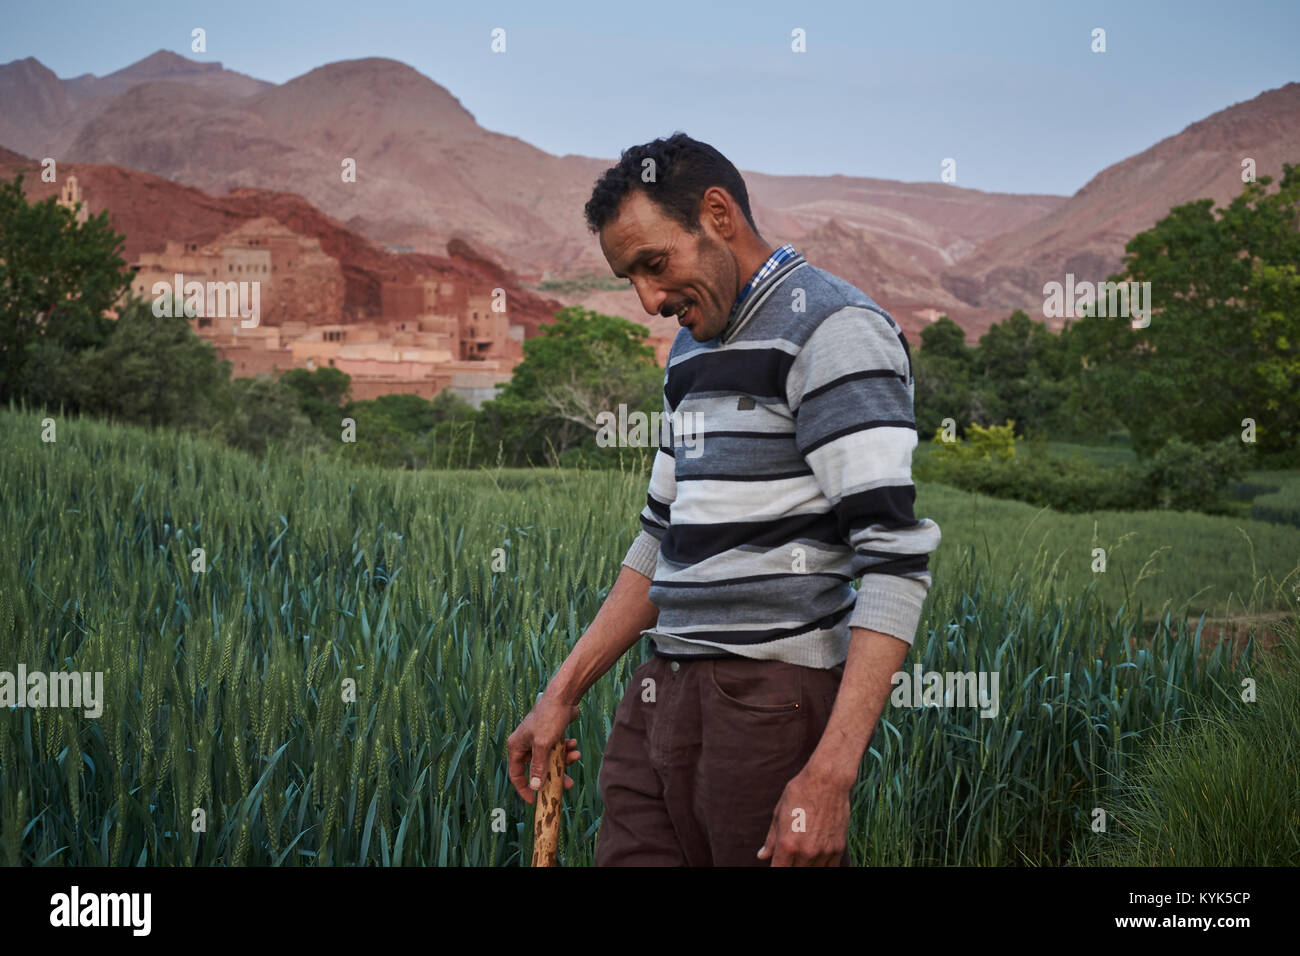 Agriculteur marocain, l'Ait Youl, vallée du Drâa, Maroc Banque D'Images